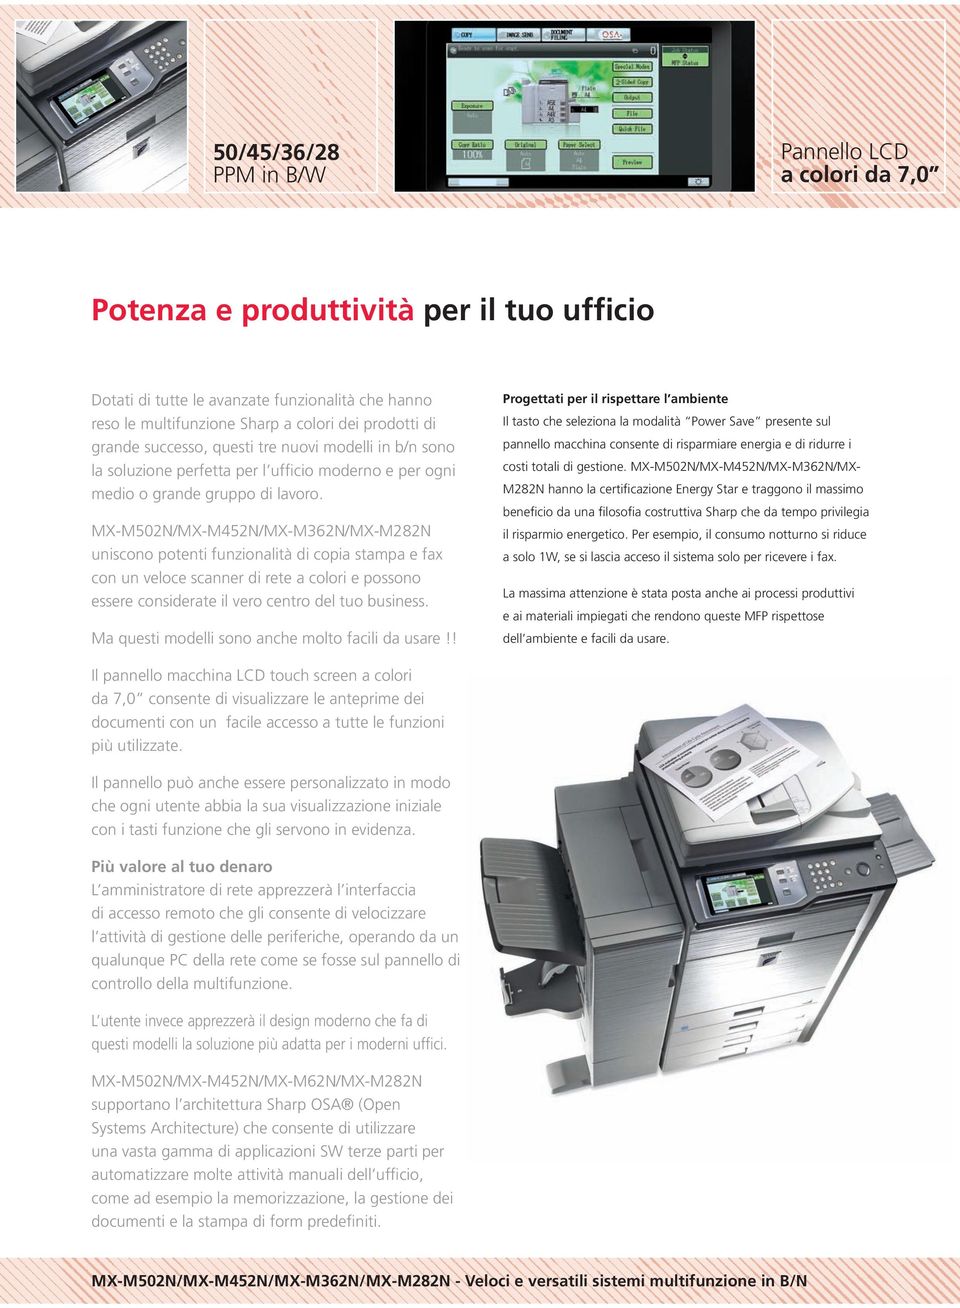 MX-M502N/MX-M452N/MX-M362N/MX-M282N uniscono potenti funzionalità di copia stampa e fax con un veloce scanner di rete a colori e possono essere considerate il vero centro del tuo business.